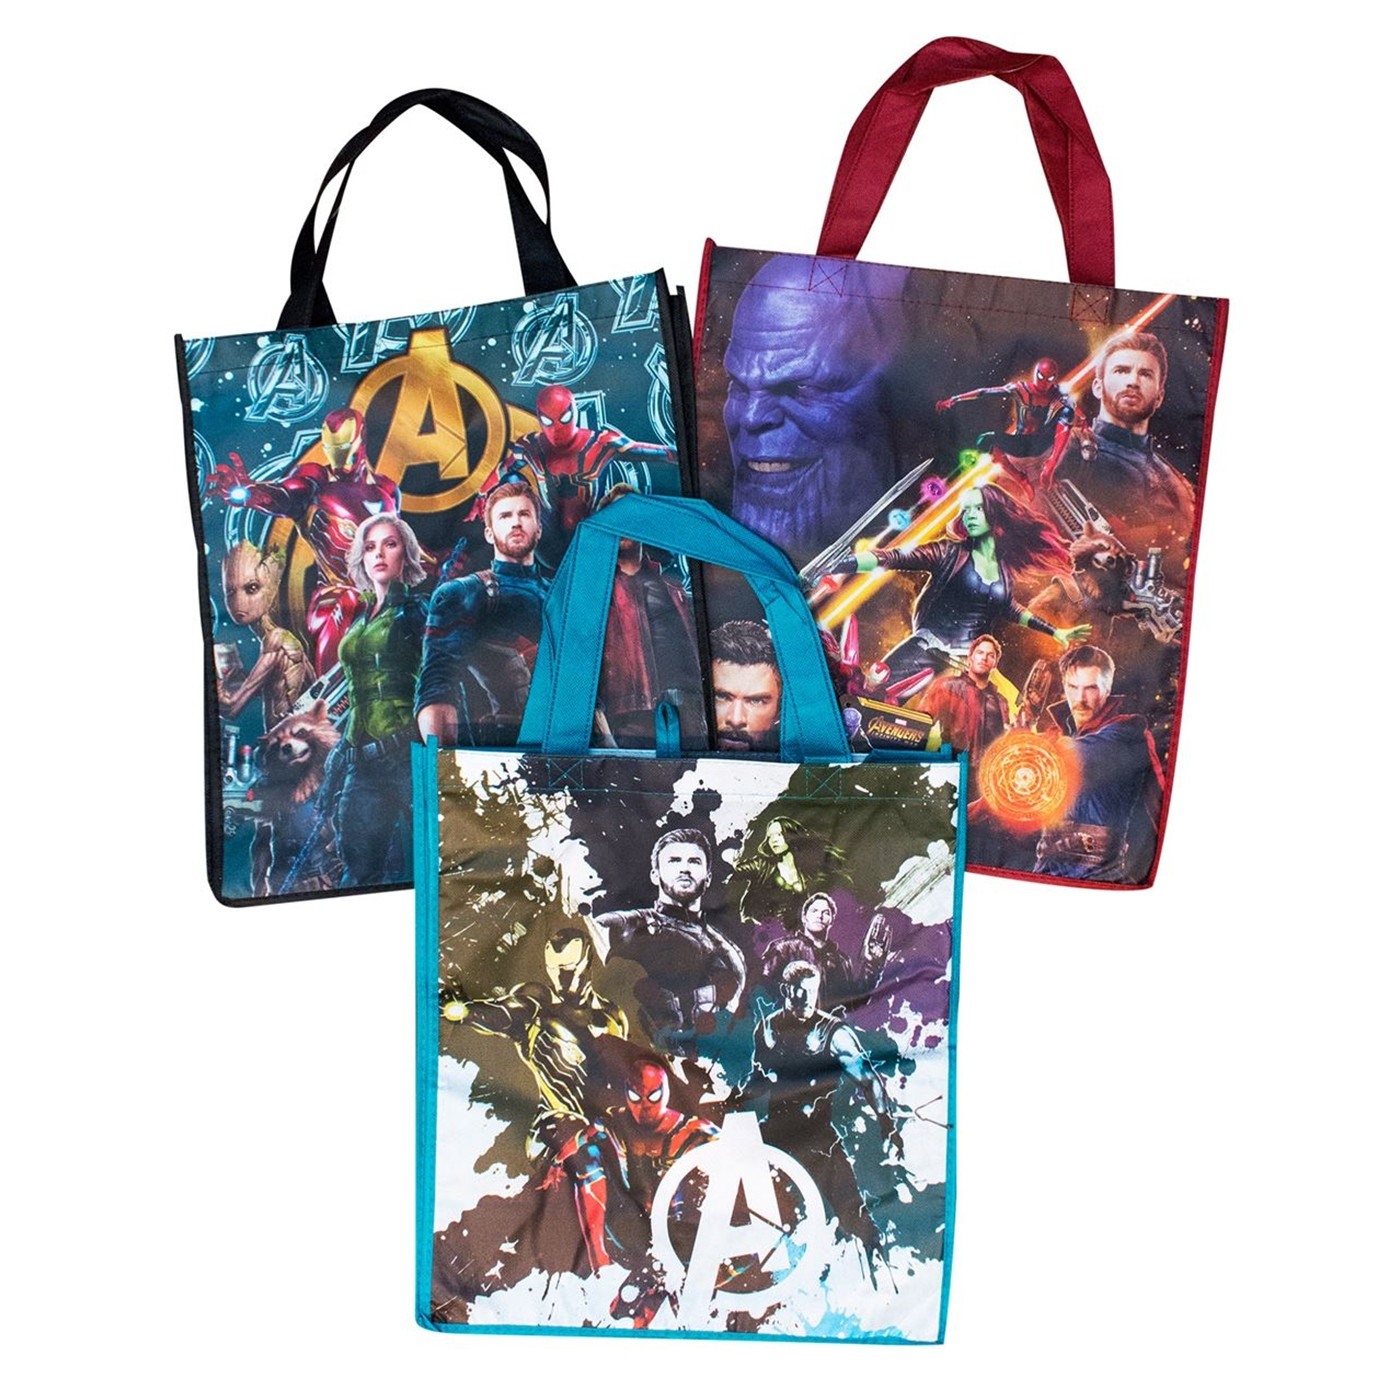 Avengers Infinity War Tote Bag 1 of 3